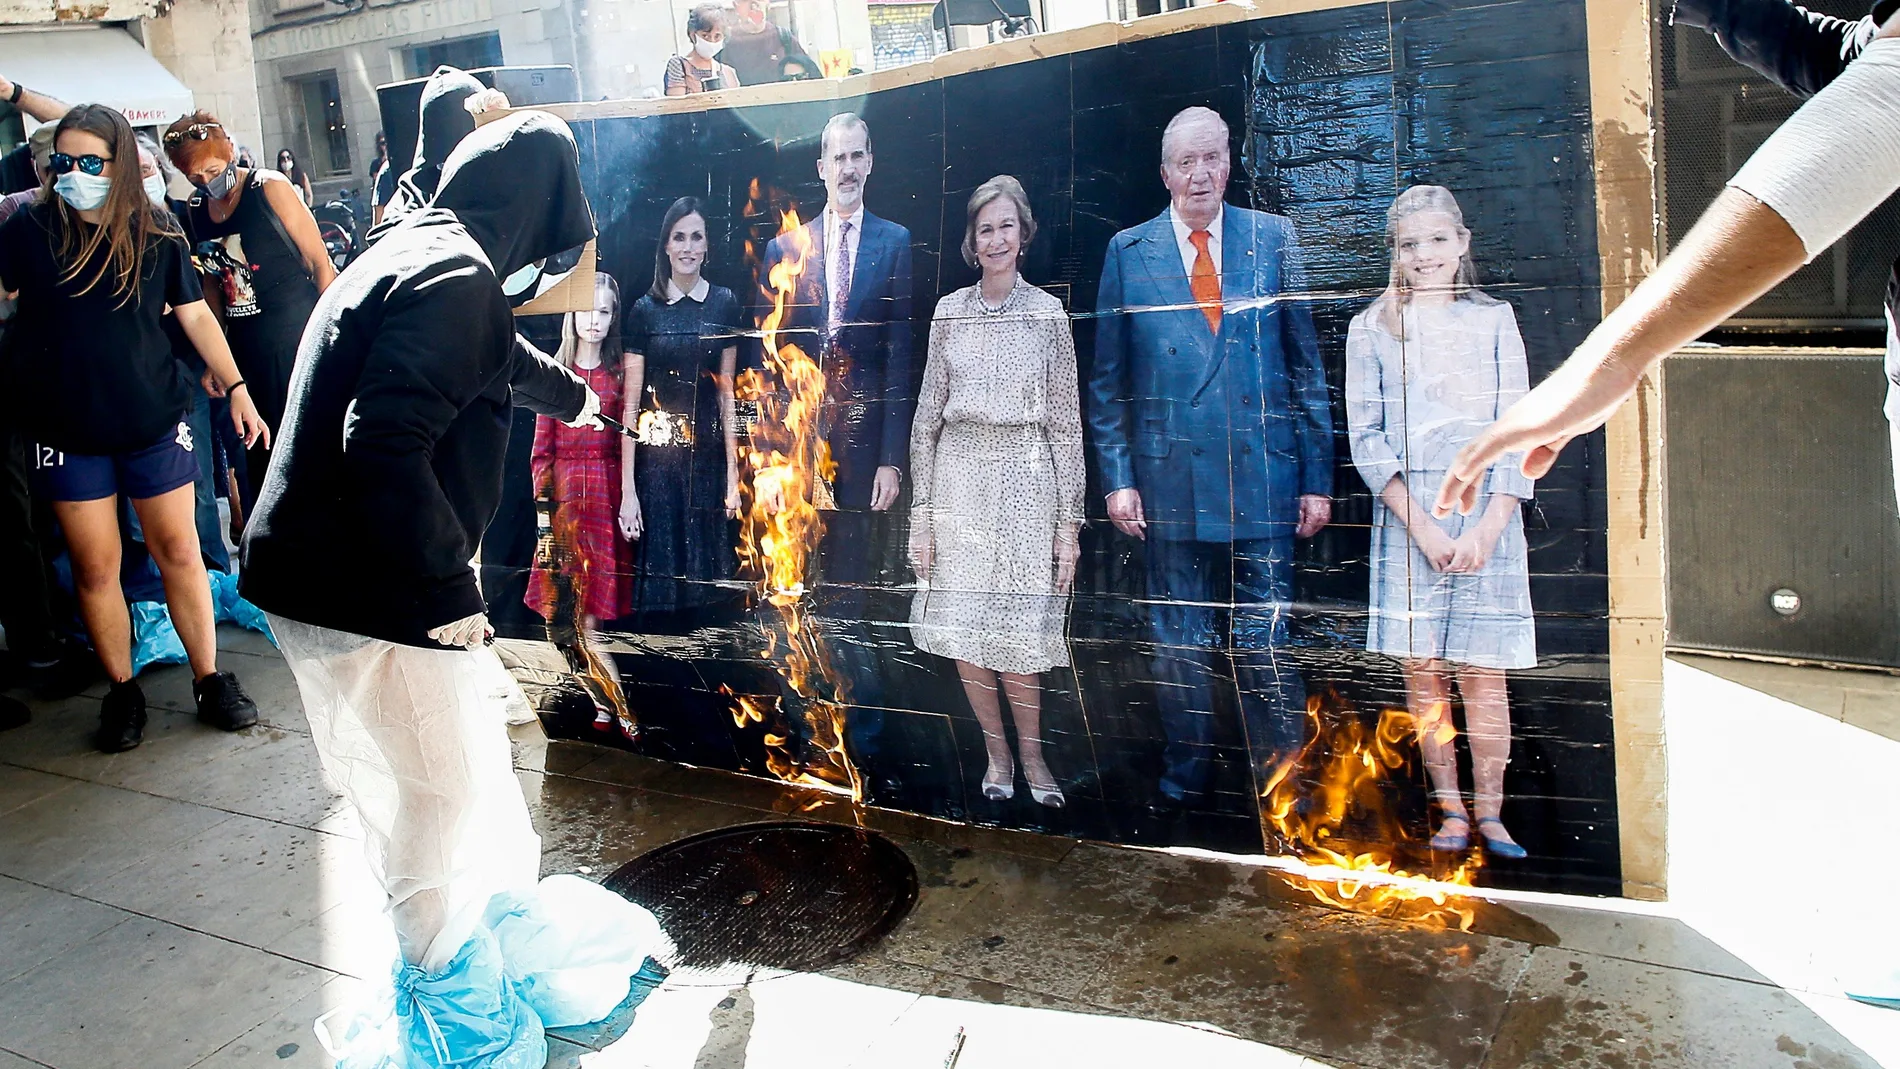 Juventudes vinculadas a la CUP queman una fotografía de la familia real